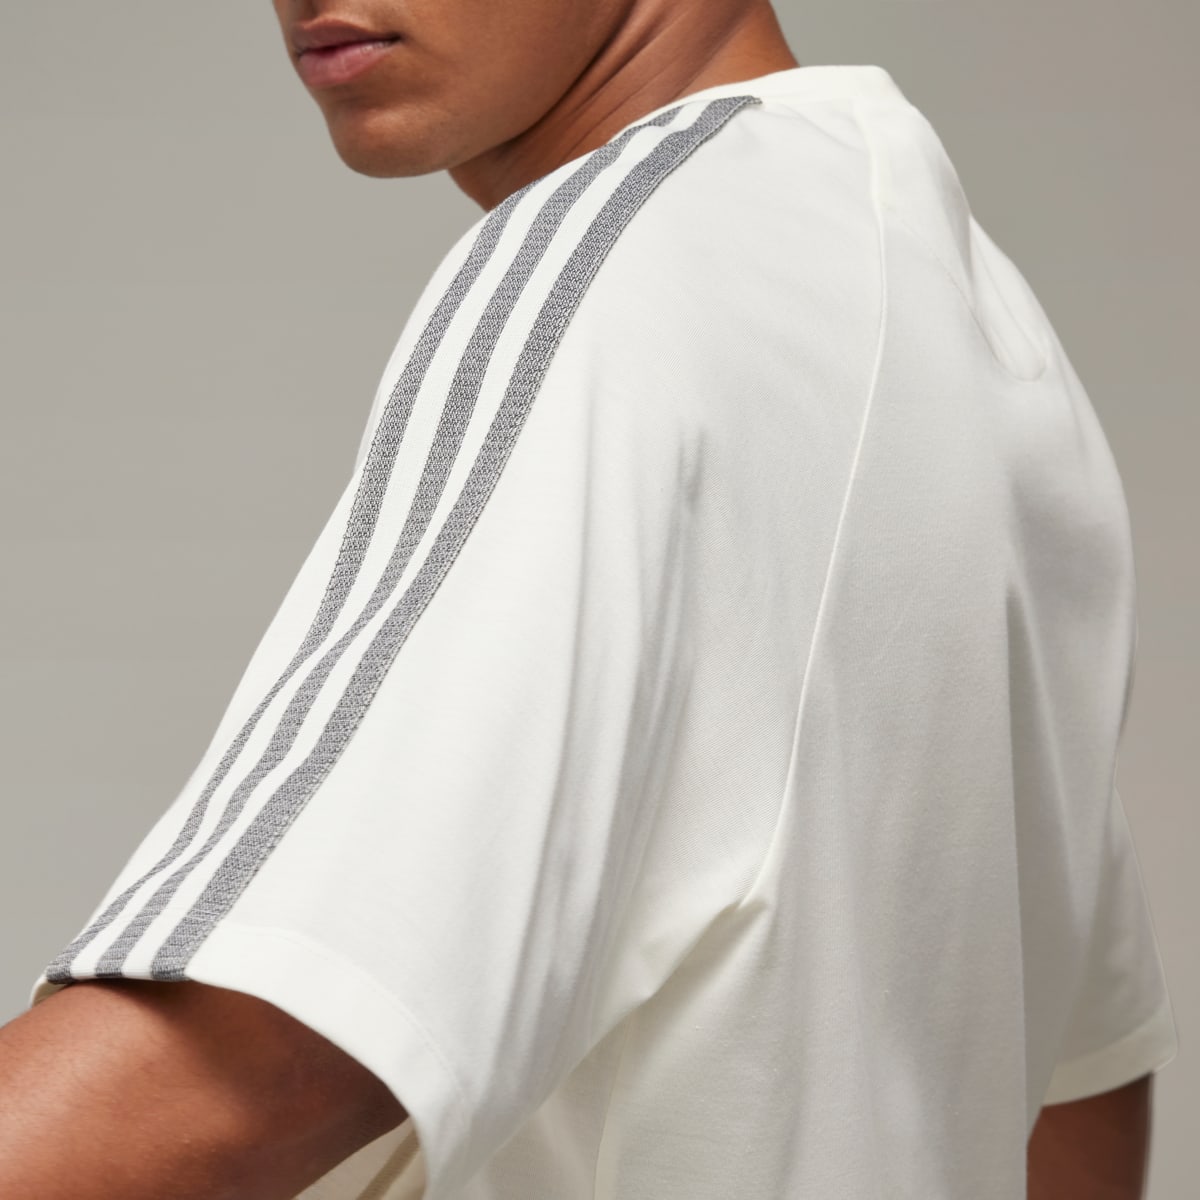 Adidas Y-3 3-Stripes Short Sleeve T-Shirt. 6